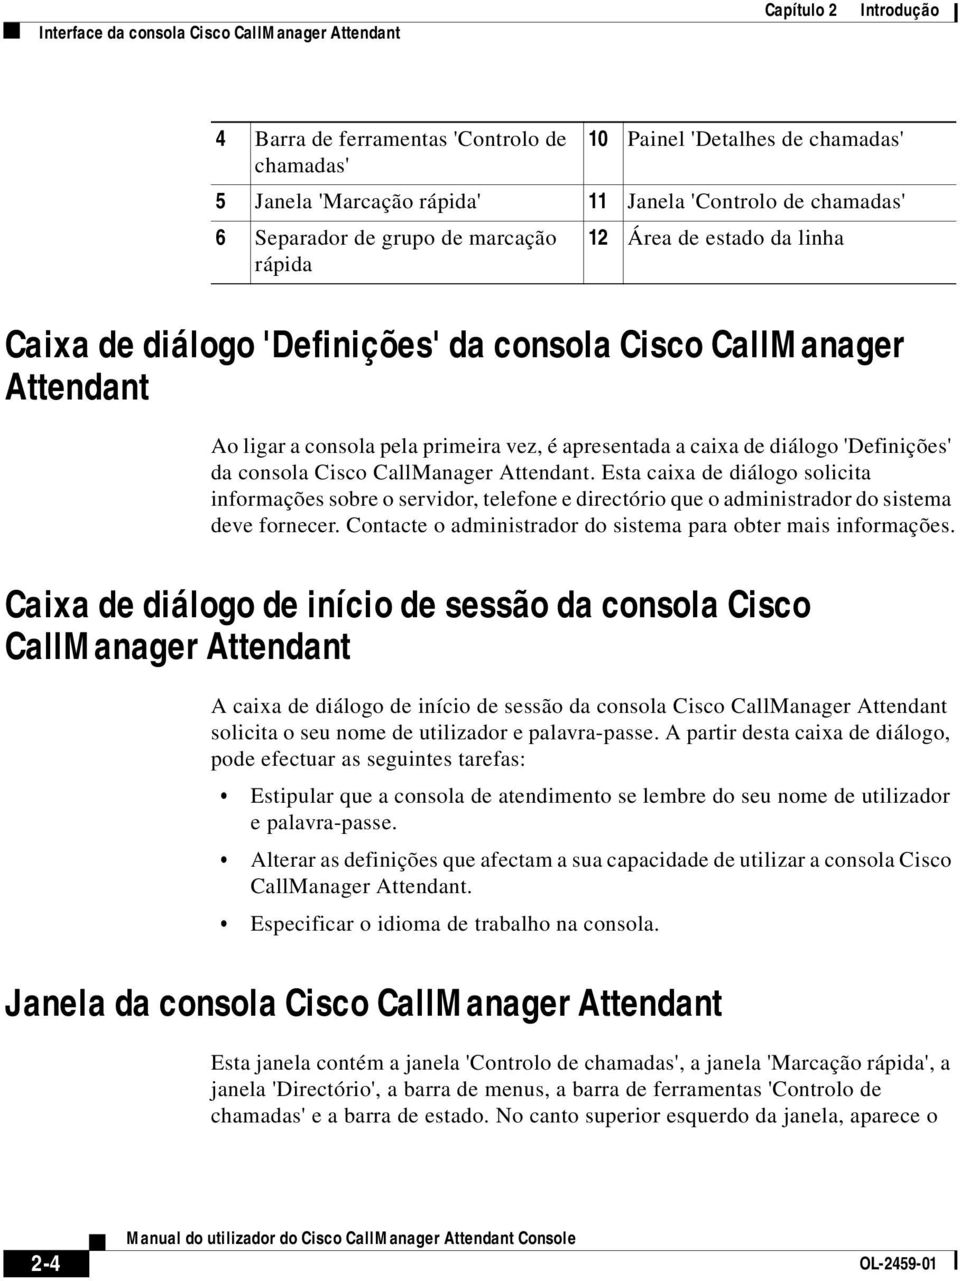 caixa de diálogo 'Definições' da consola Cisco CallManager Attendant. Esta caixa de diálogo solicita informações sobre o servidor, telefone e directório que o administrador do sistema deve fornecer.